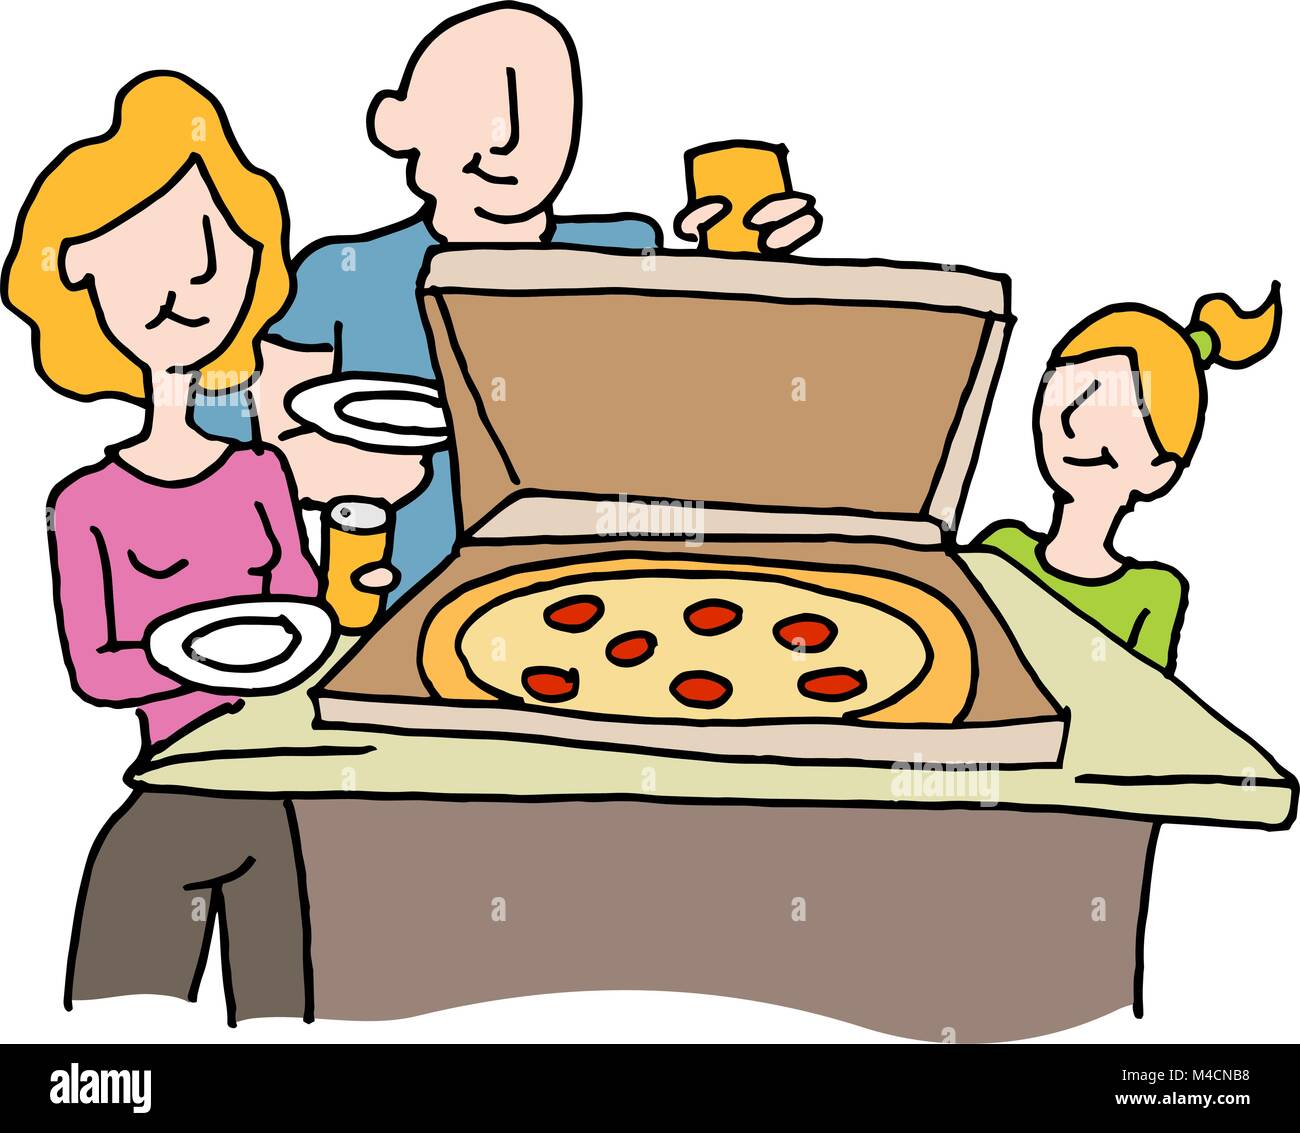 Une image d'un dîner pizza nuit de famille. Illustration de Vecteur